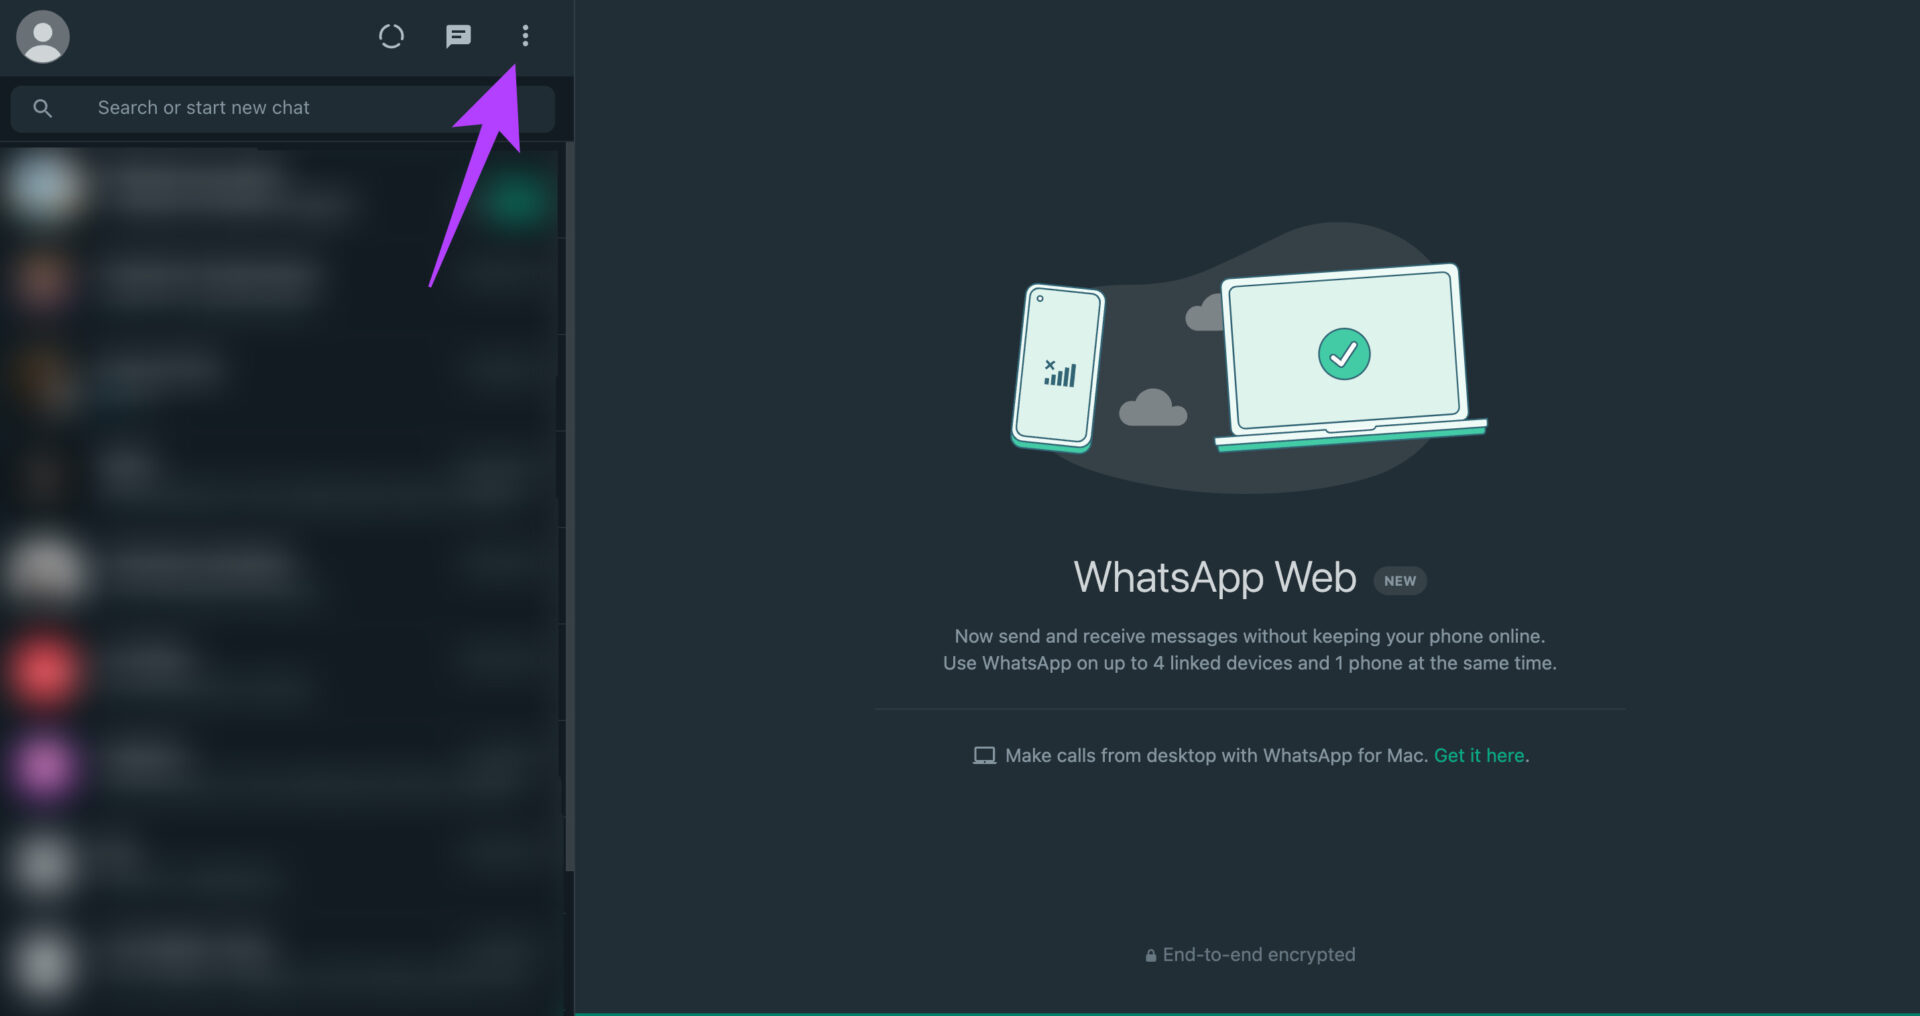 WhatsApp Web three dot menu